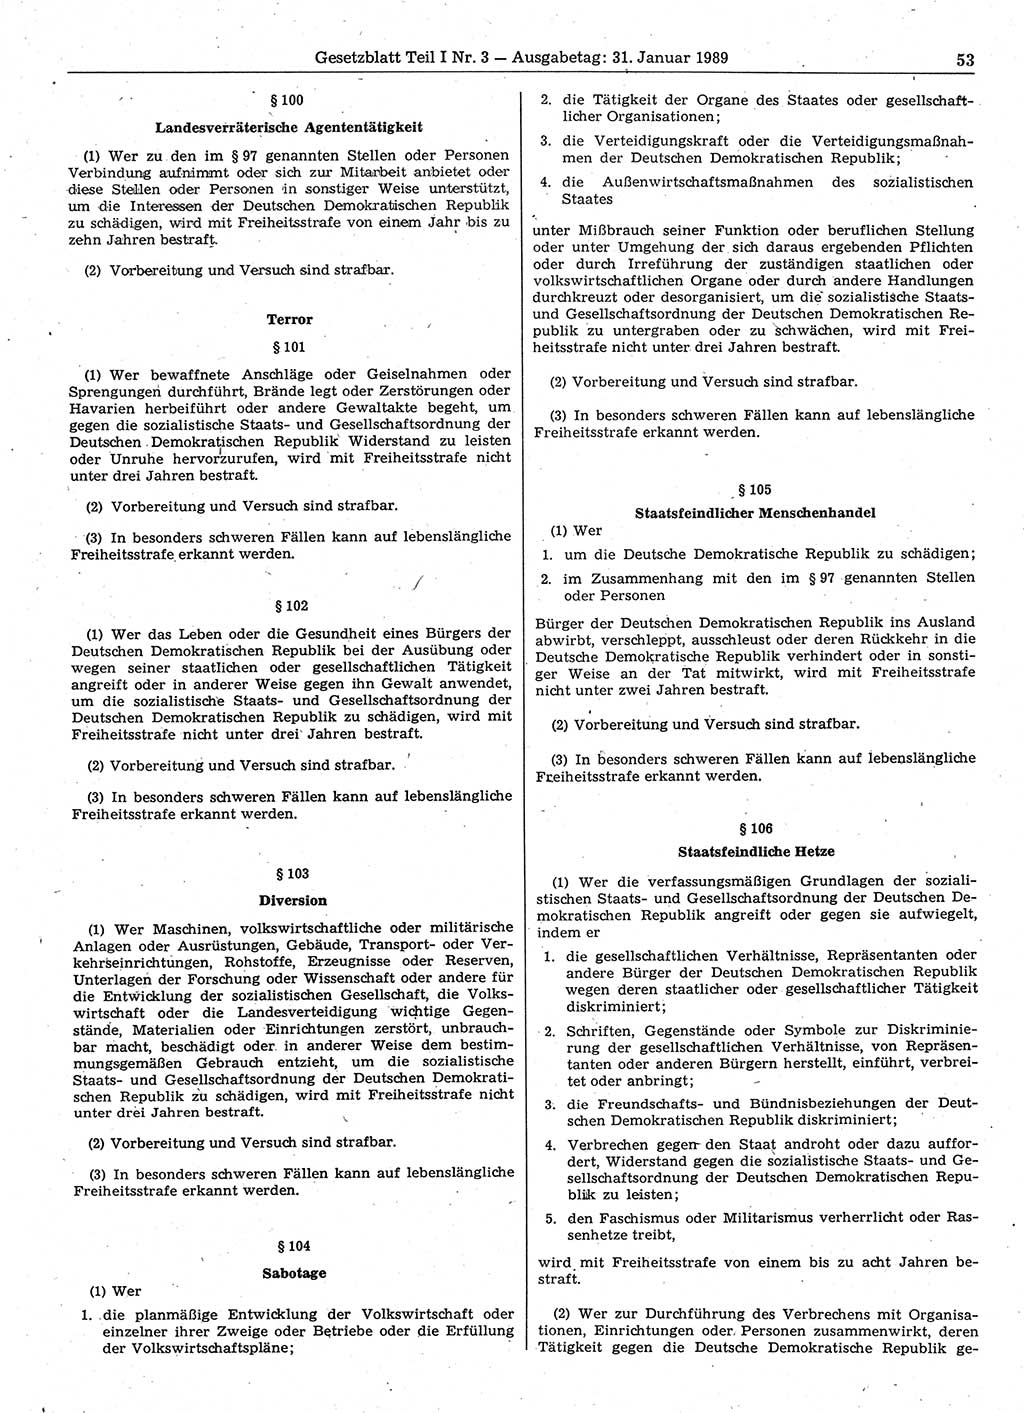 Gesetzblatt (GBl.) der Deutschen Demokratischen Republik (DDR) Teil Ⅰ 1989, Seite 53 (GBl. DDR Ⅰ 1989, S. 53)